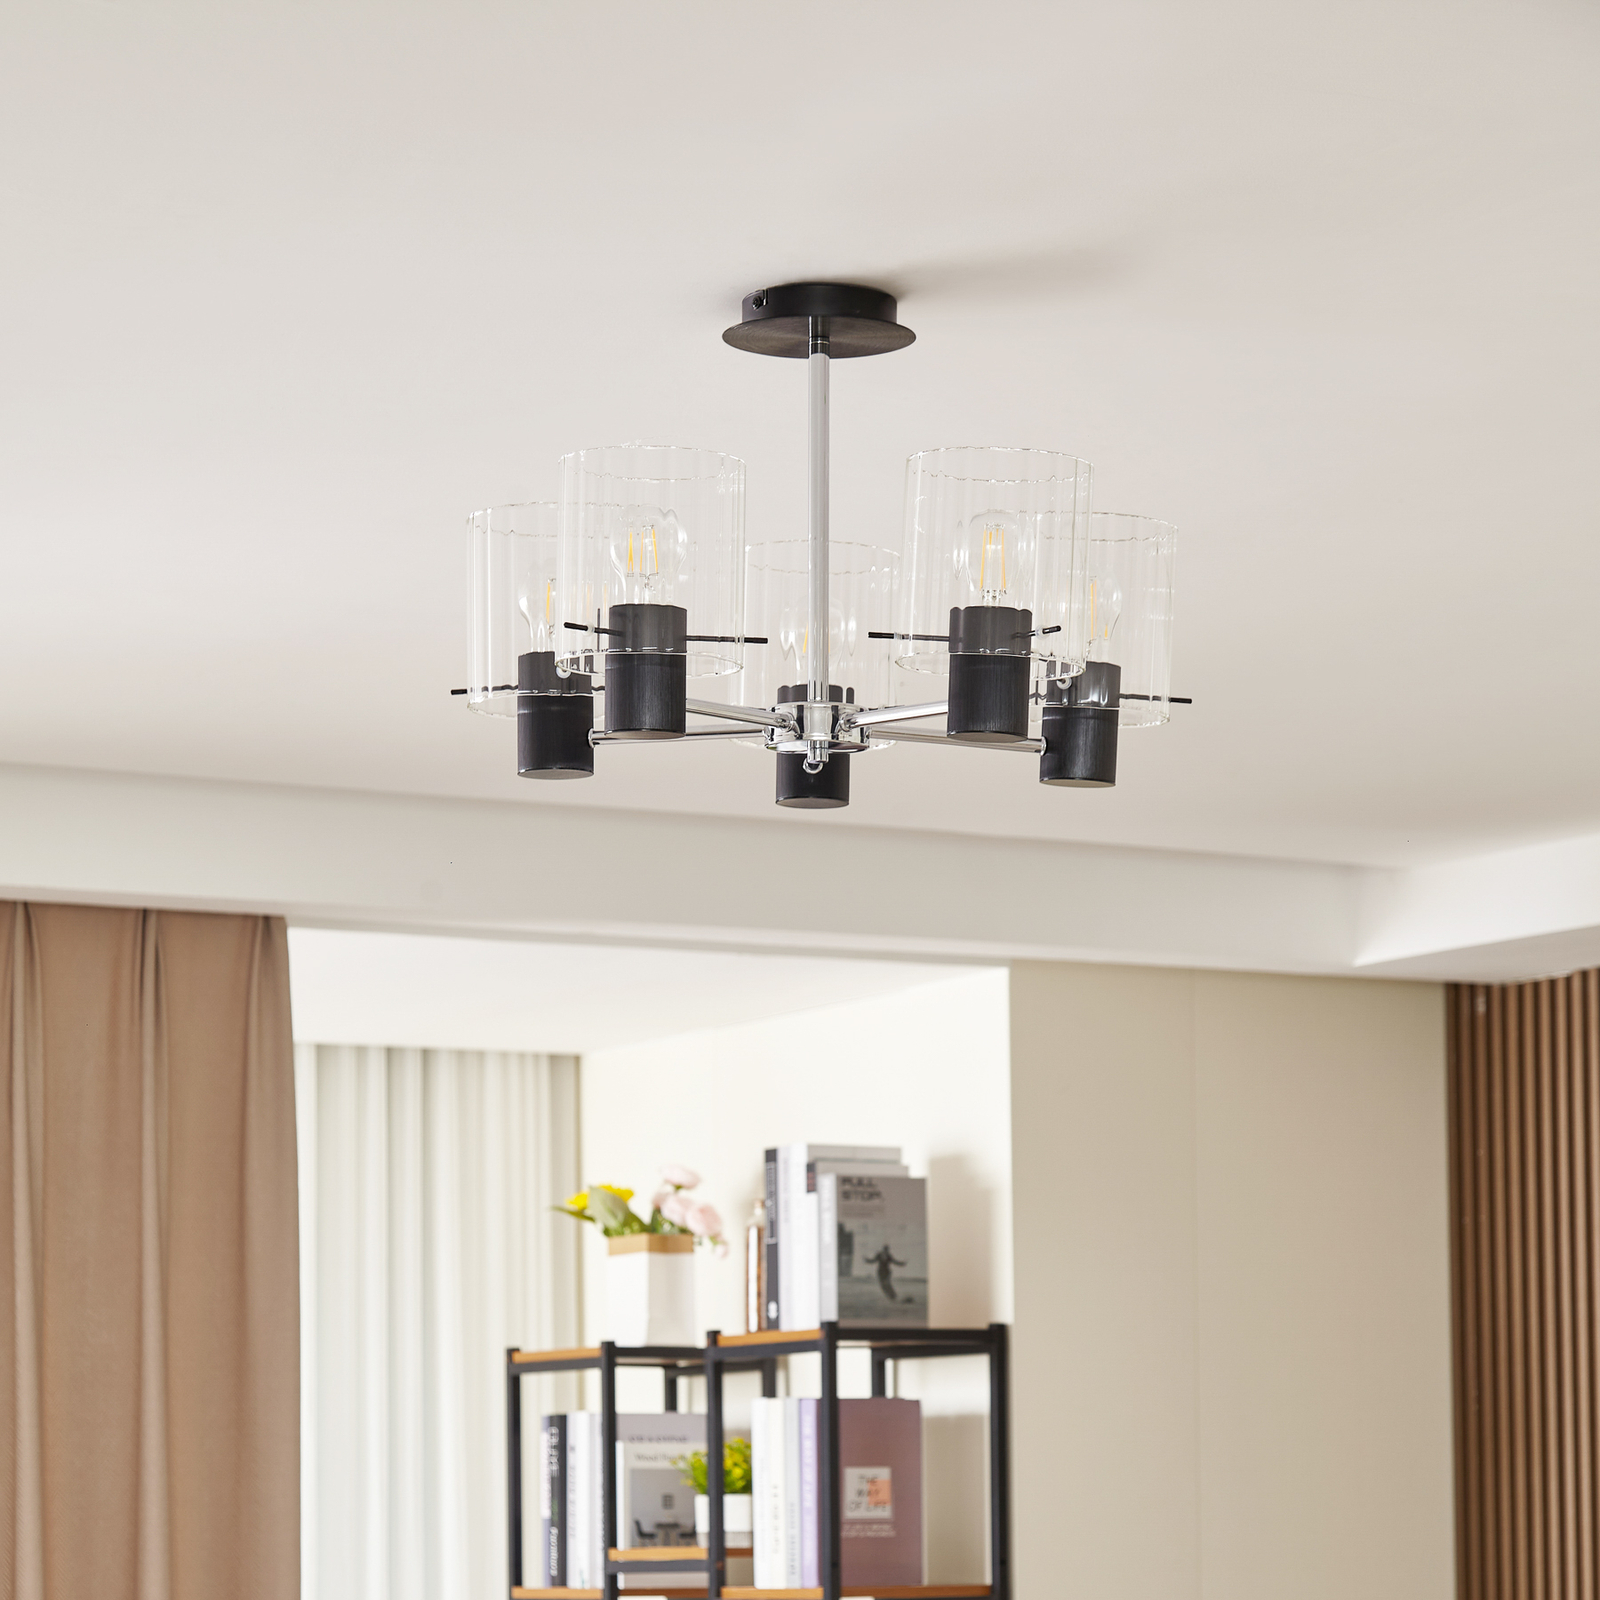 Lucande ceiling light Eirian, 5-bulb, black, glass, E27